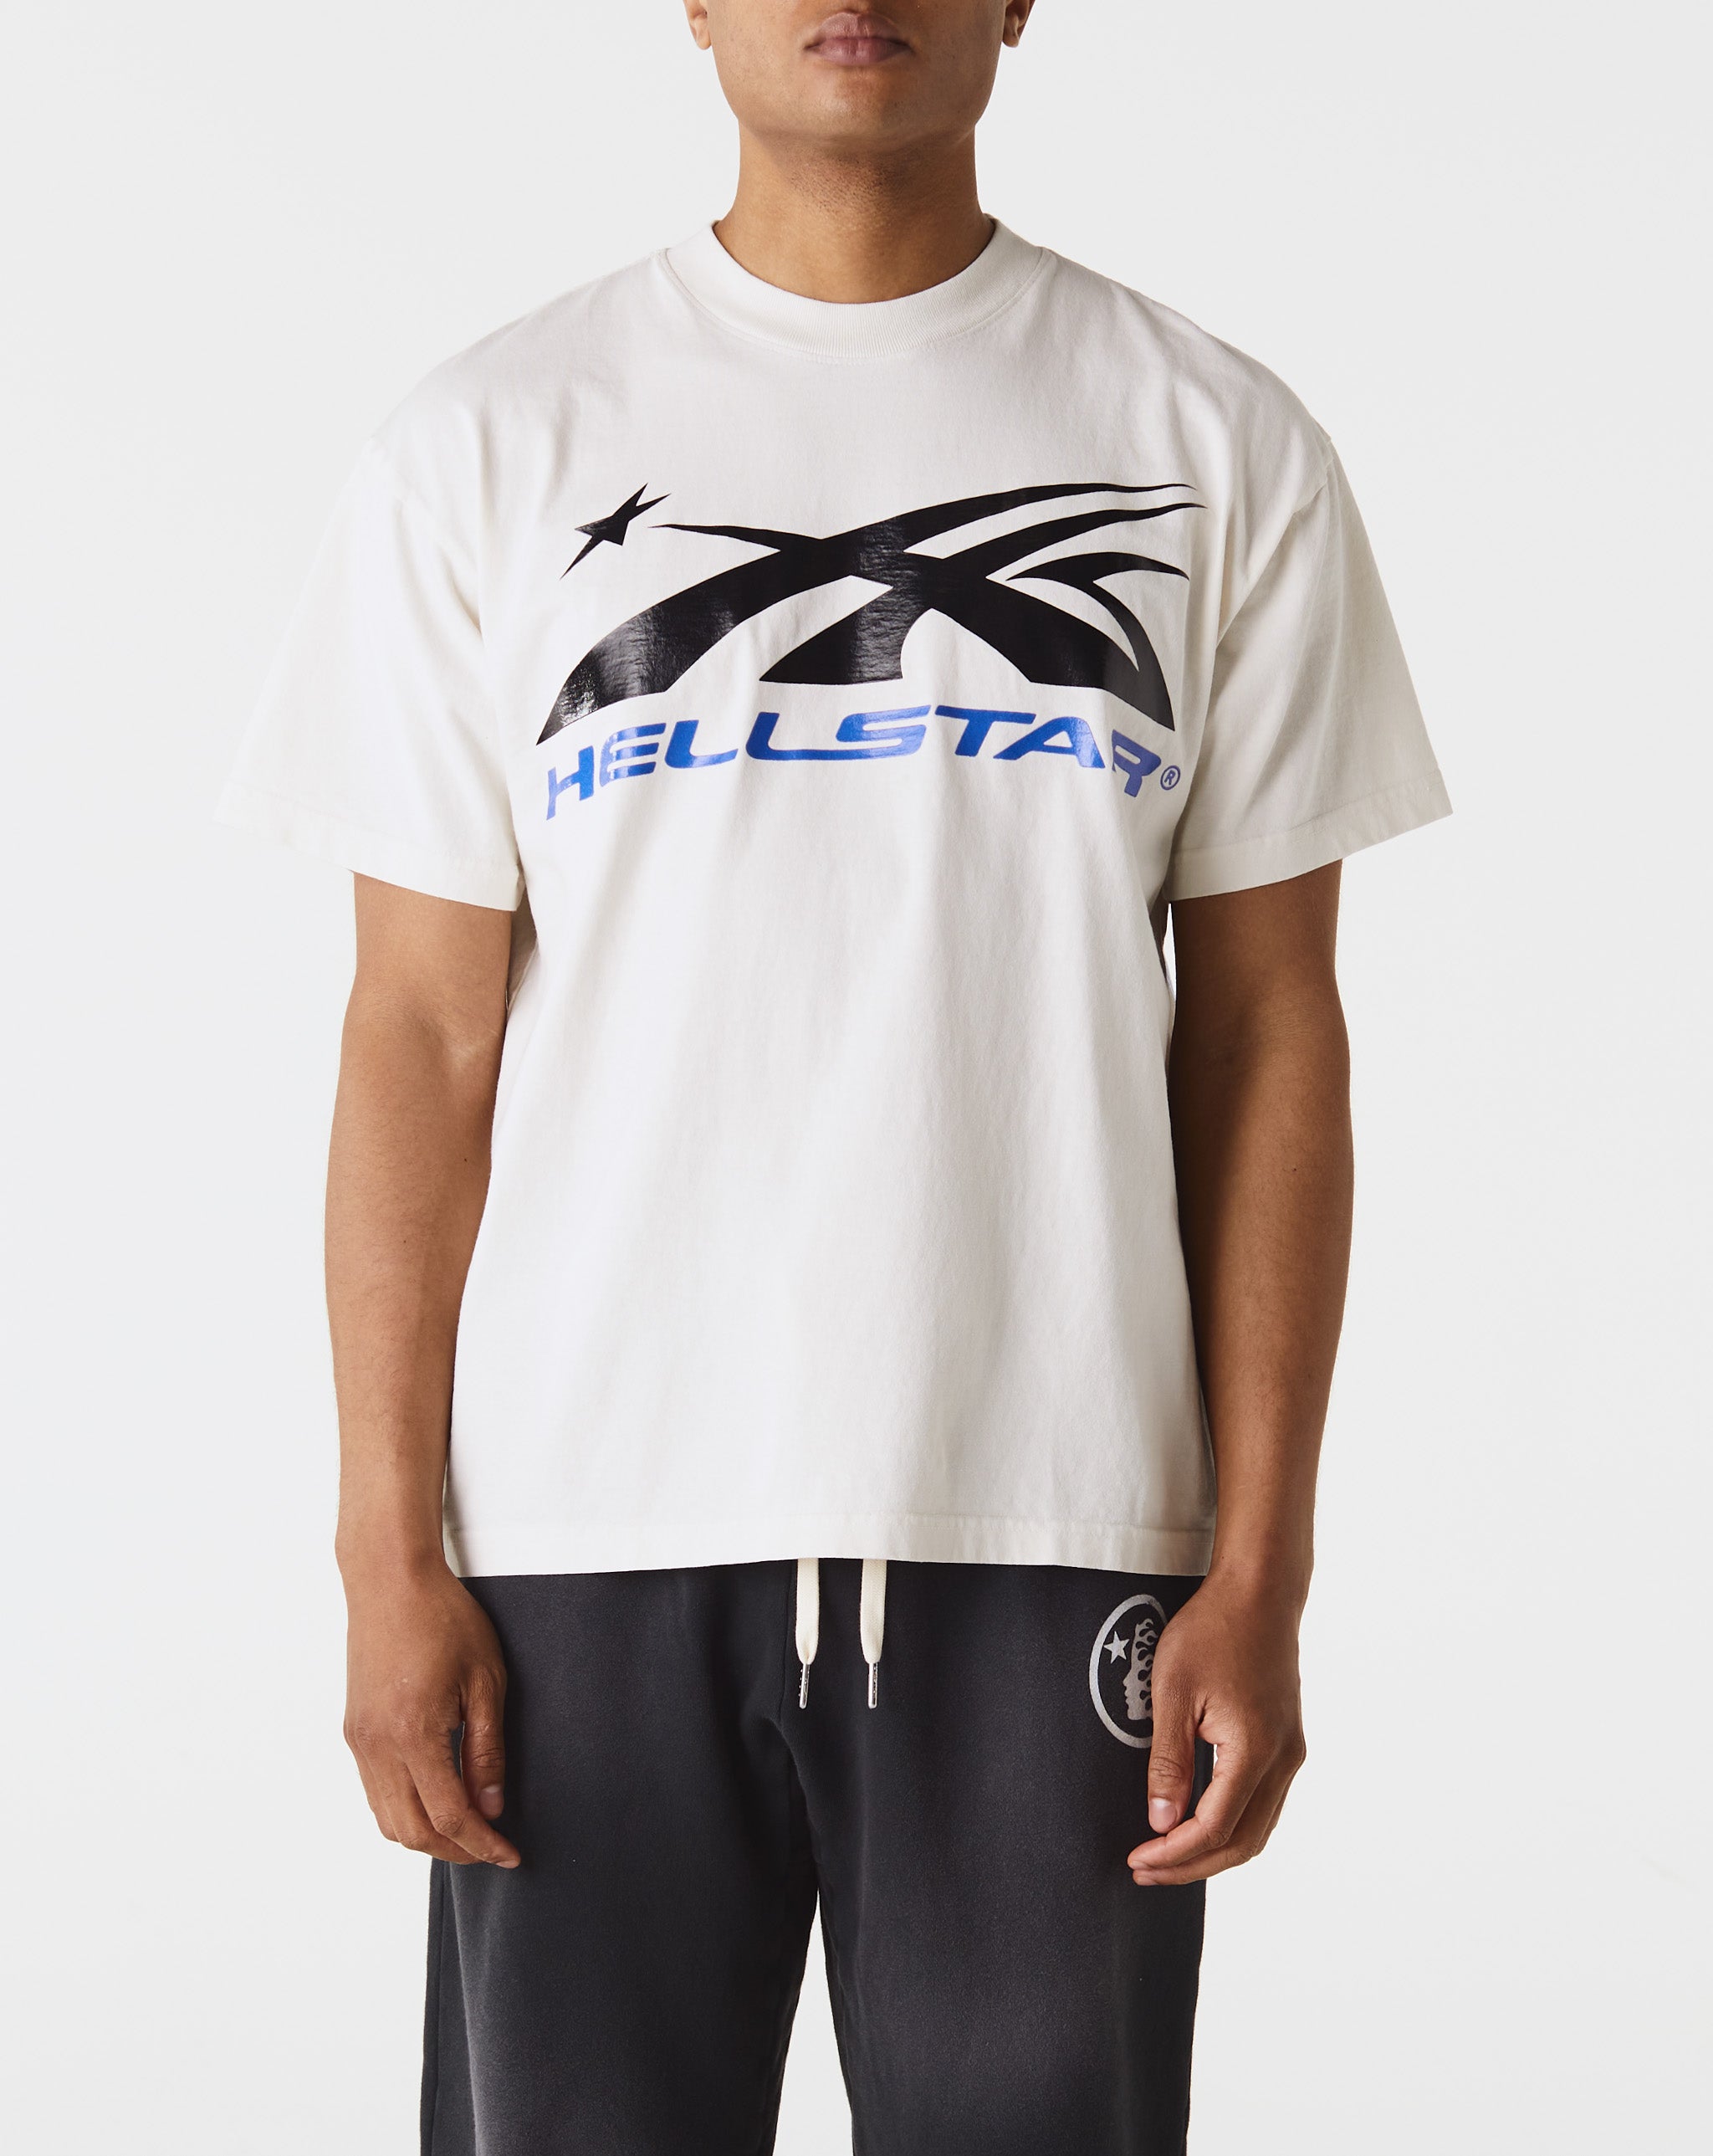 Hellstar Hellstar Uniform Sweatpants  - Cheap Erlebniswelt-fliegenfischen Jordan outlet